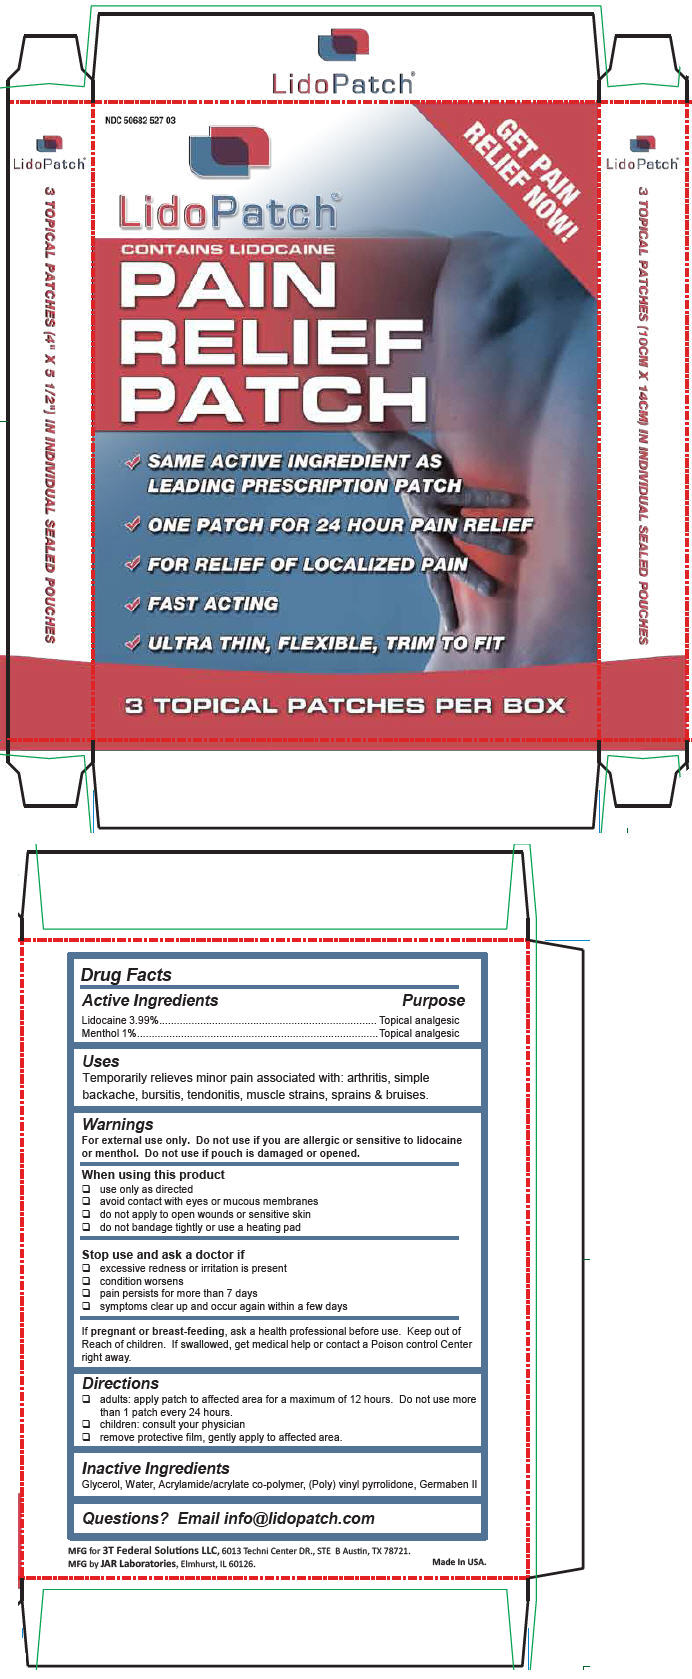 Principal Display Panel - 3 Topical Patch Carton